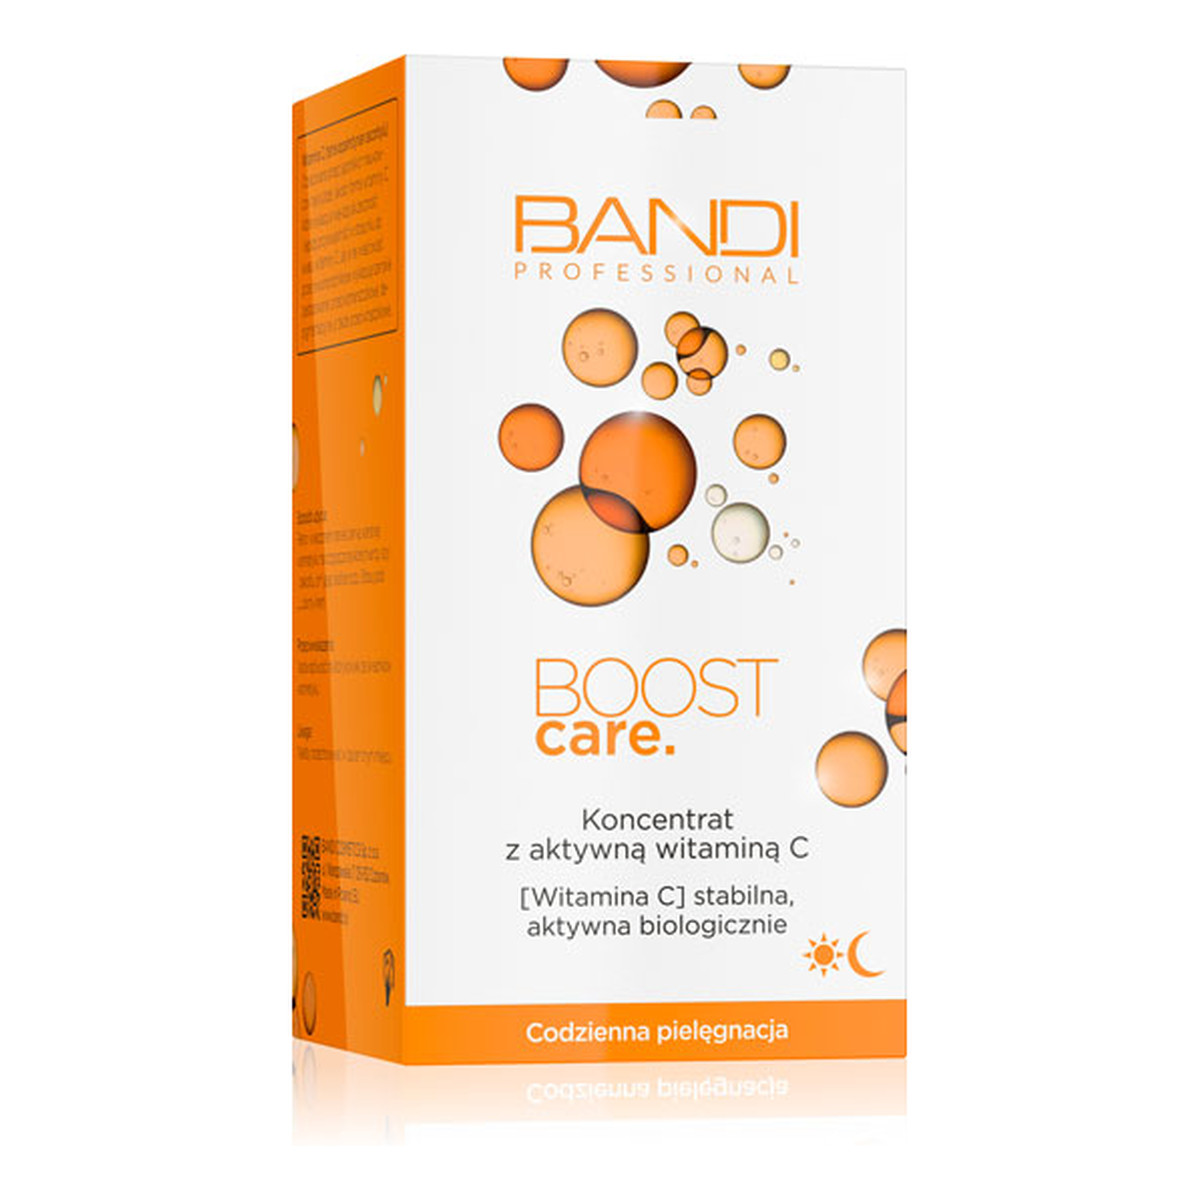 Bandi Boost Care Koncentrat z aktywną witaminą C 30ml